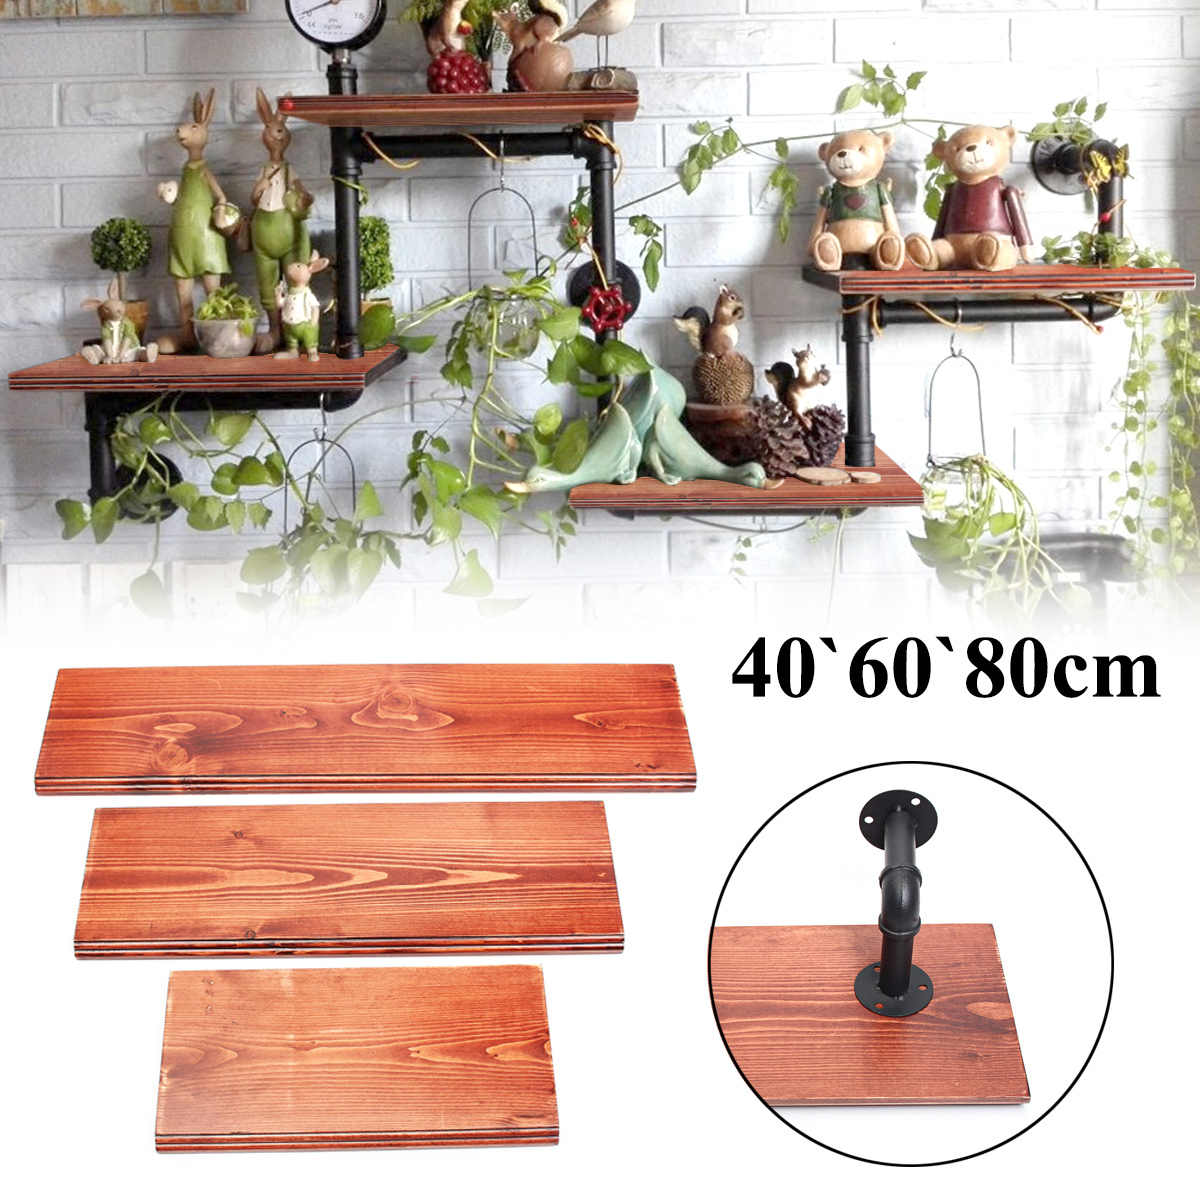 3Pcs-406080cm-Wooden-Board-Shelves-Wall-Mount-Floating-Shelf-Display-Bracket-Waterproof-Decor-1390599-3